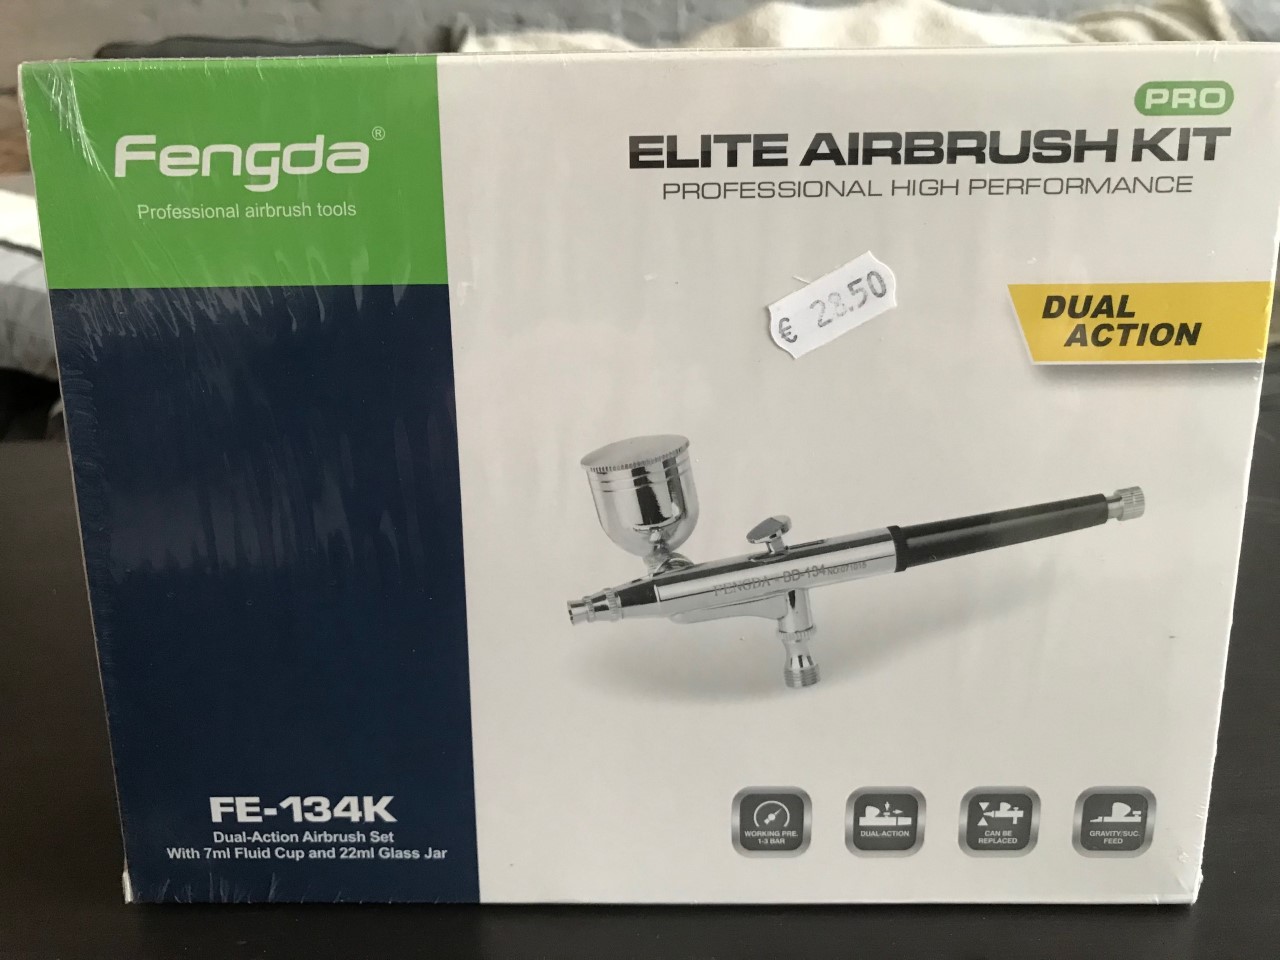 Fengda elite airbrush kit FE-134K dual action